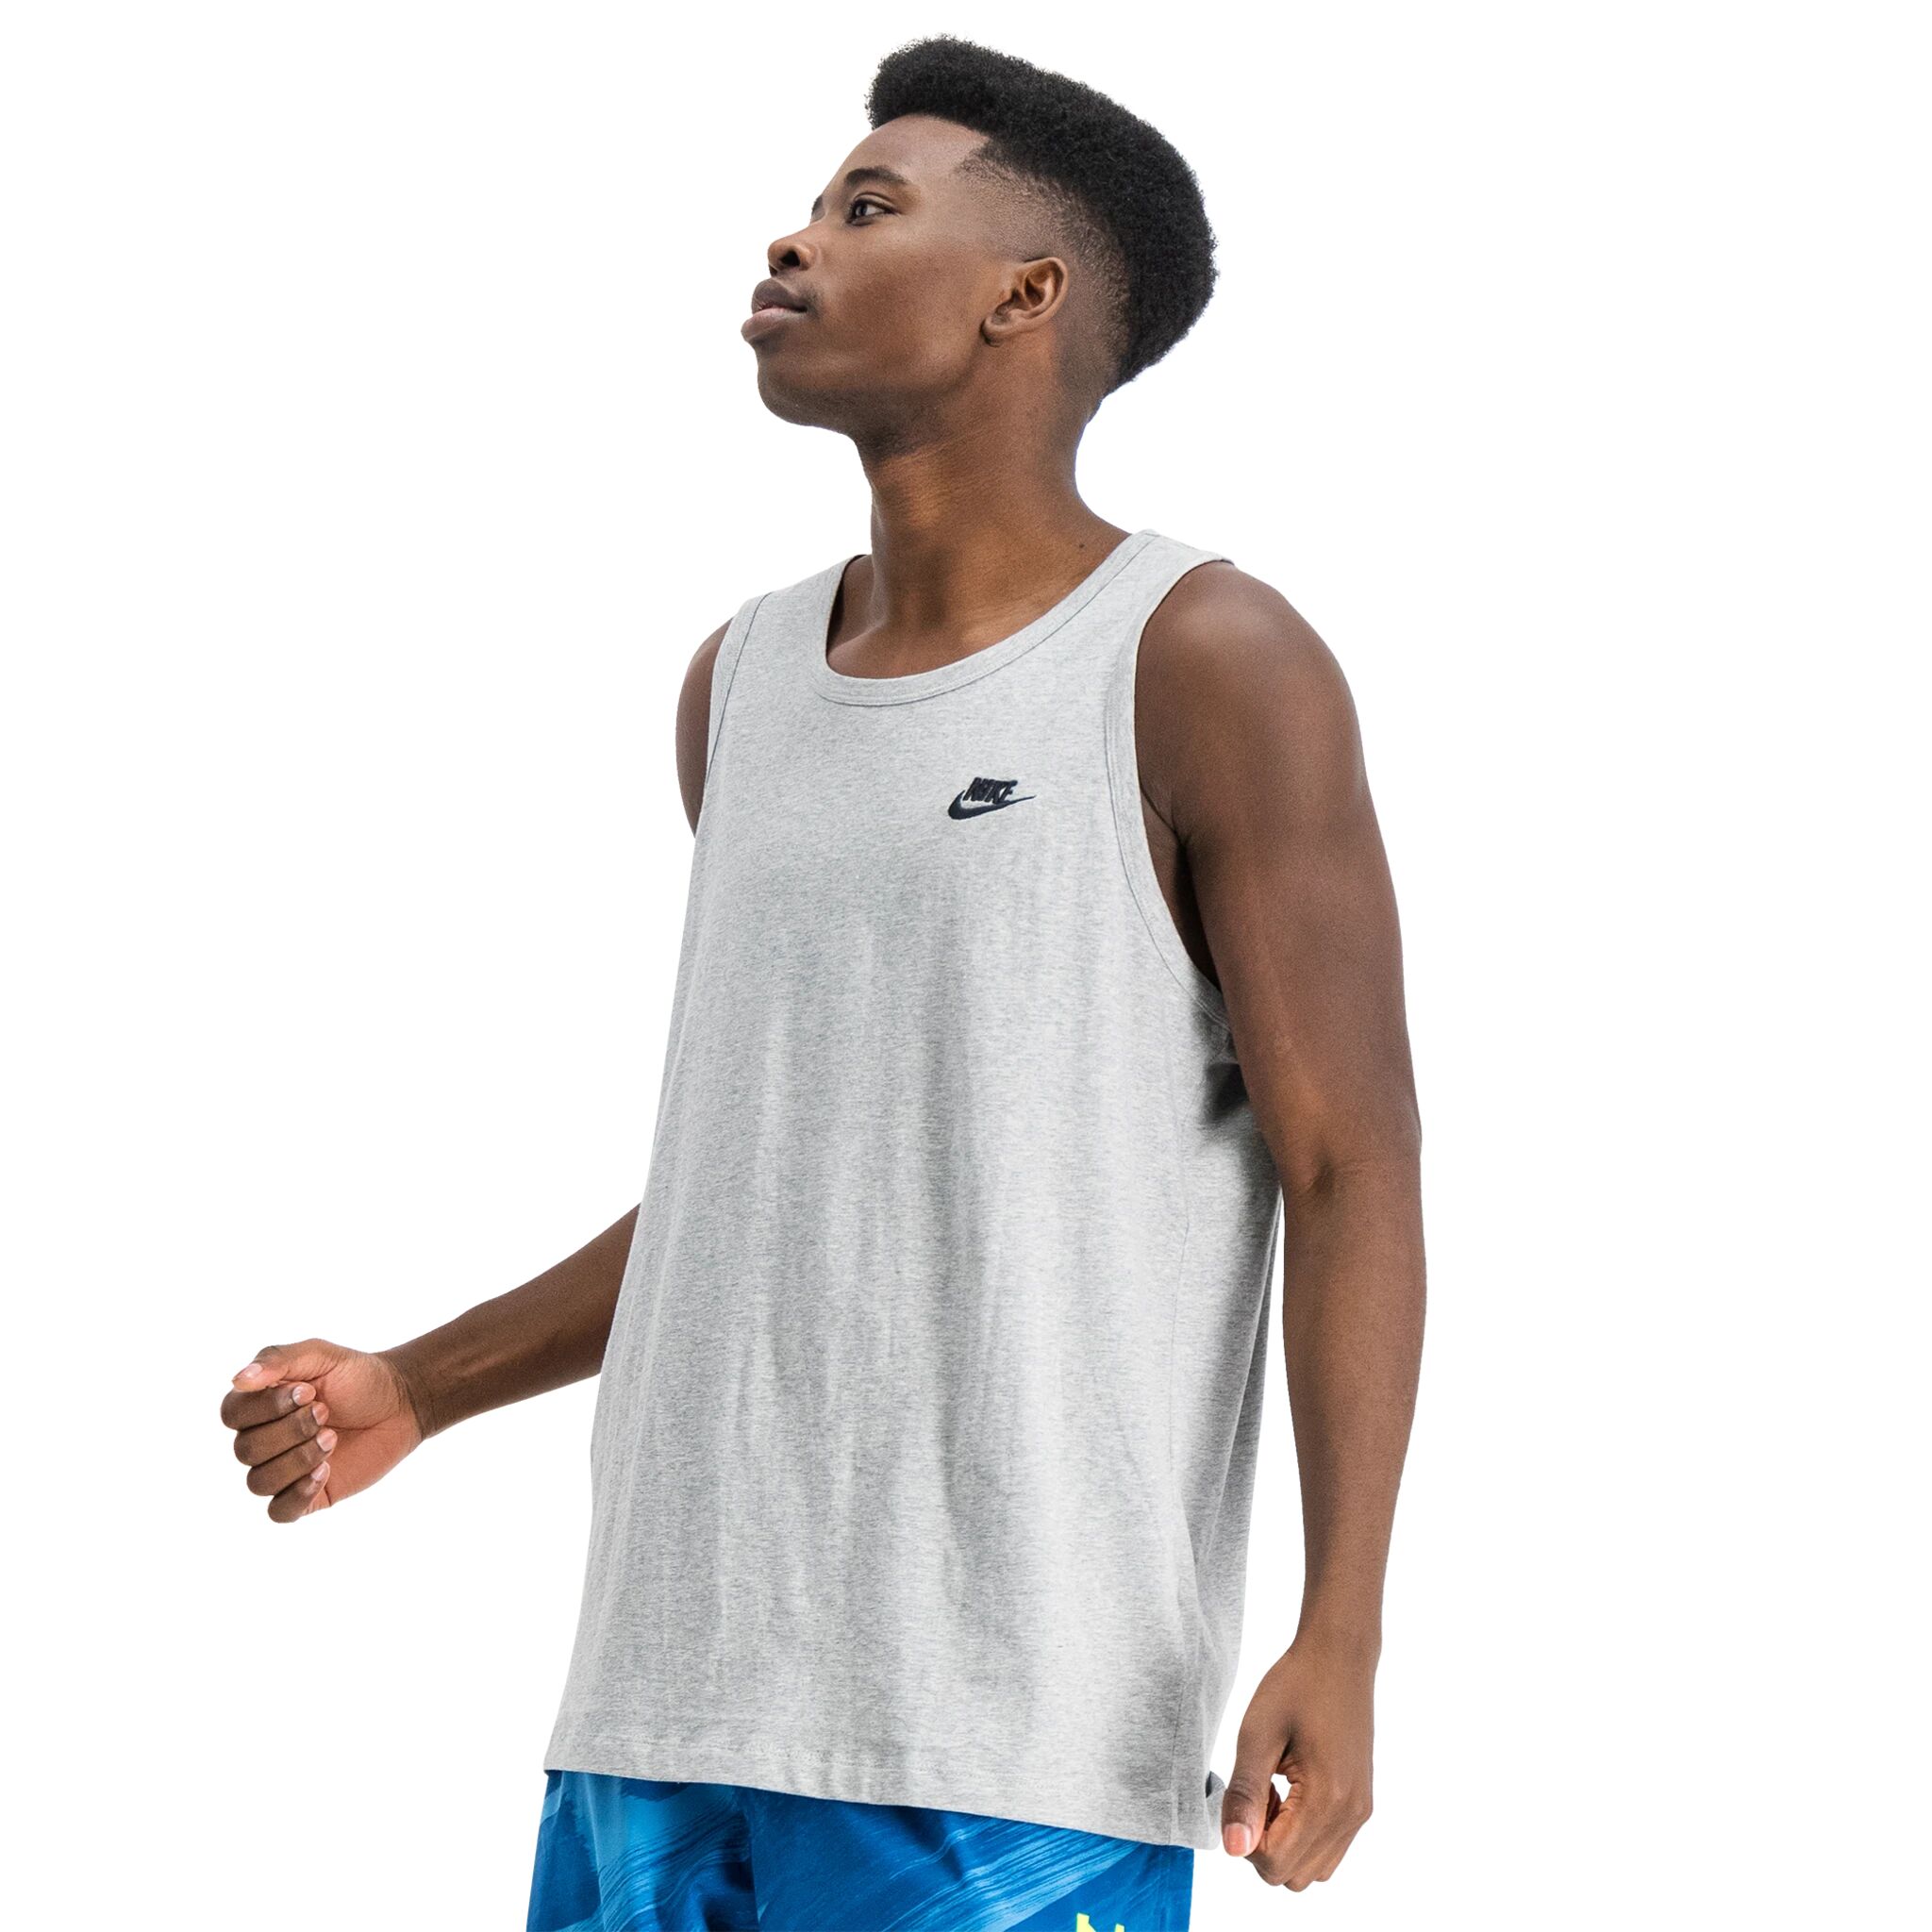 Nike Sportswear Men’s Tank, singlet herre XL DK GREY HEATHER/BLAC